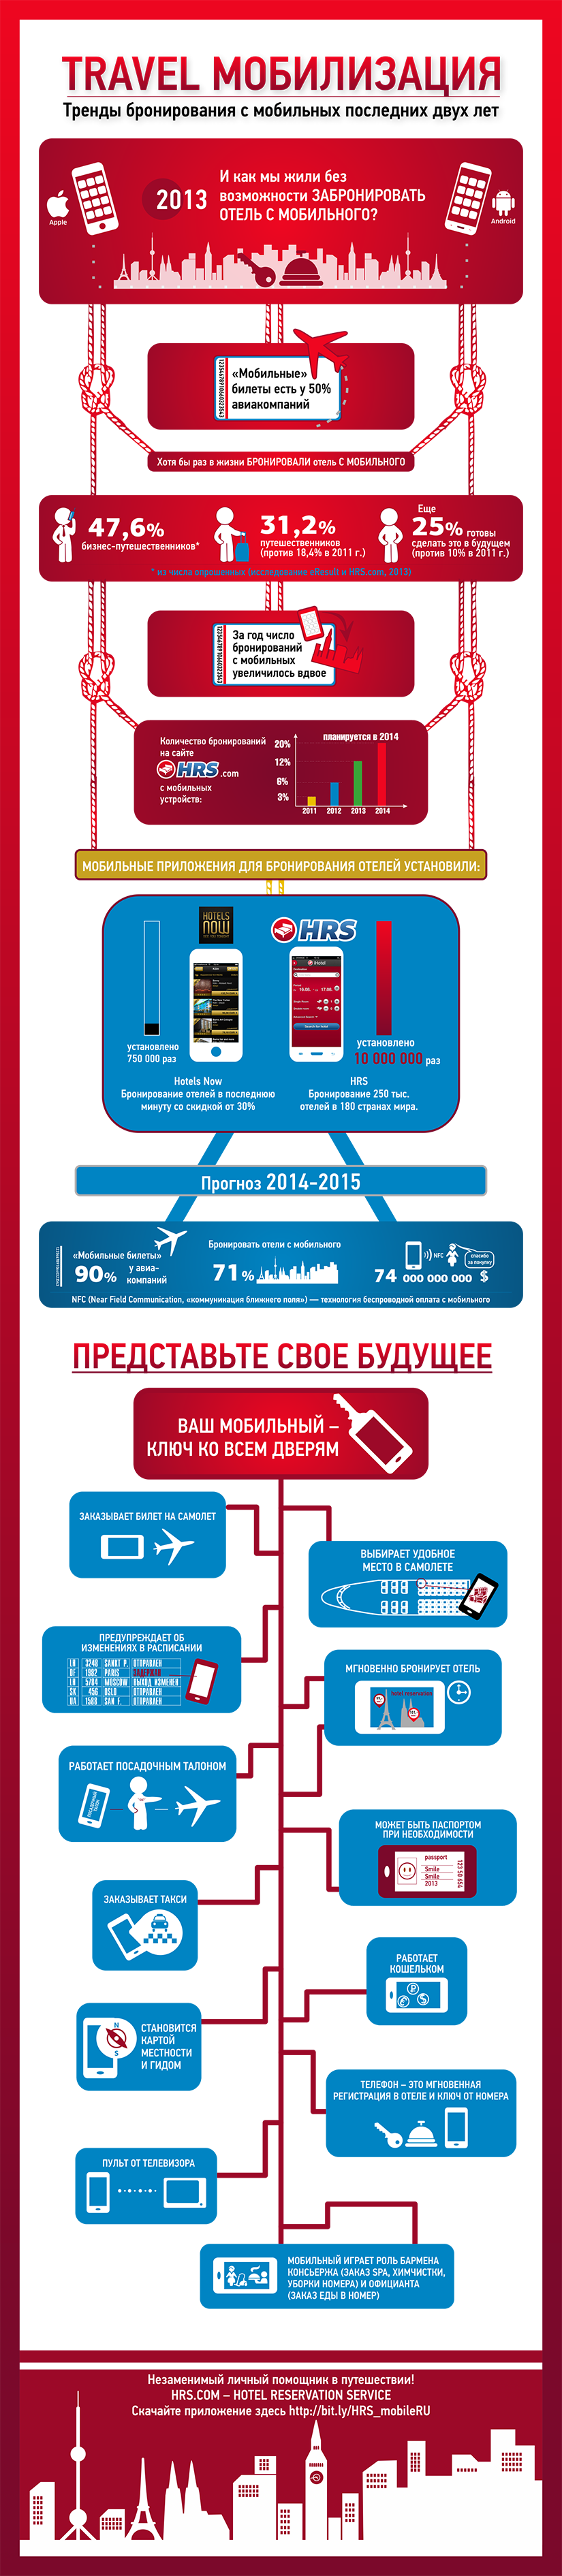 Инфографика: travel мобилизация – тренды бронирования с мобильных последних двух лет